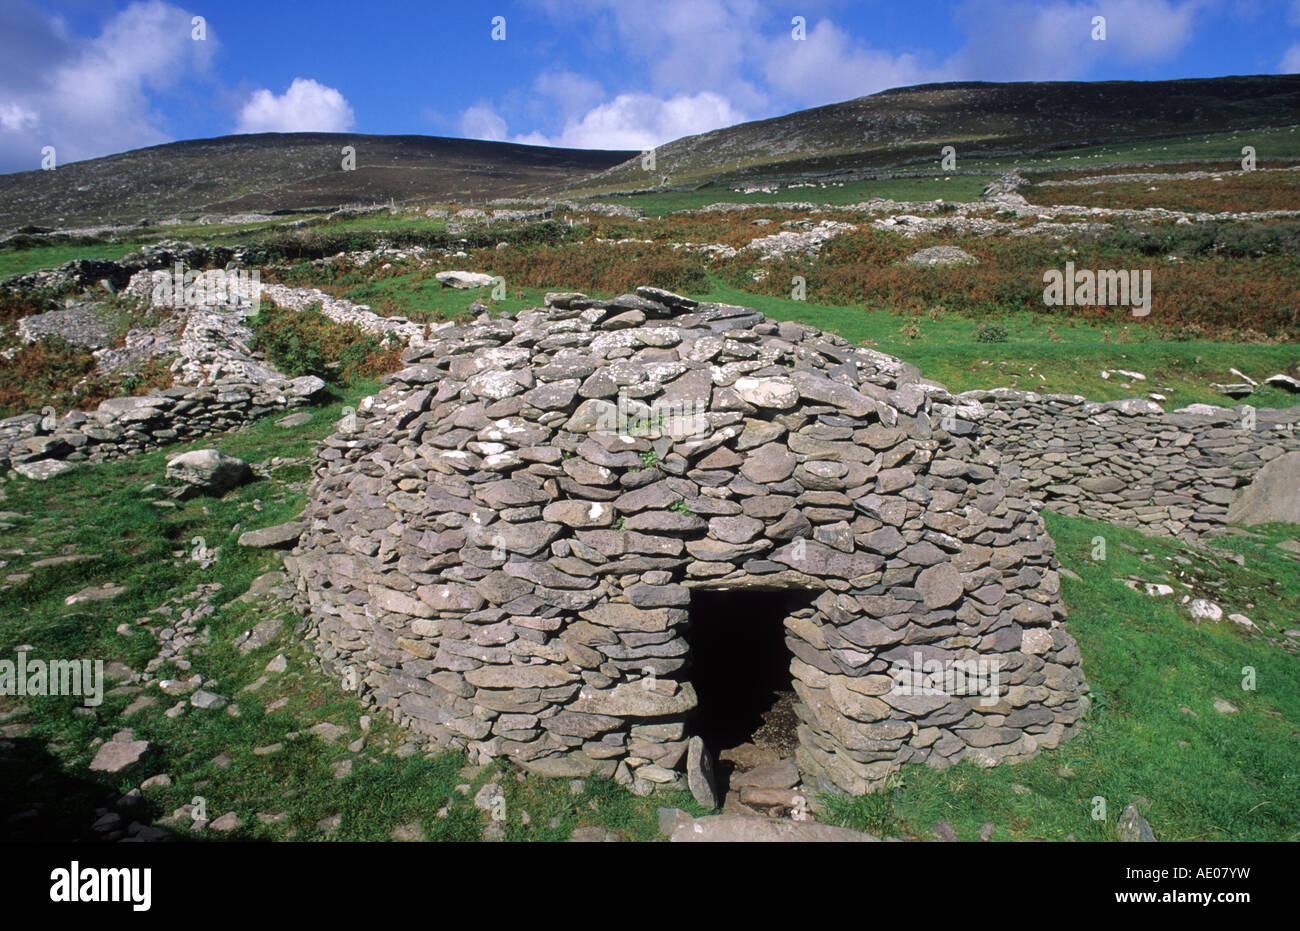 Preistoria Beehive Hut Penisola di Dingle Contea di Kerry Irlanda Eire Irish preistoria freestone costruzione in pietra a secco Foto Stock